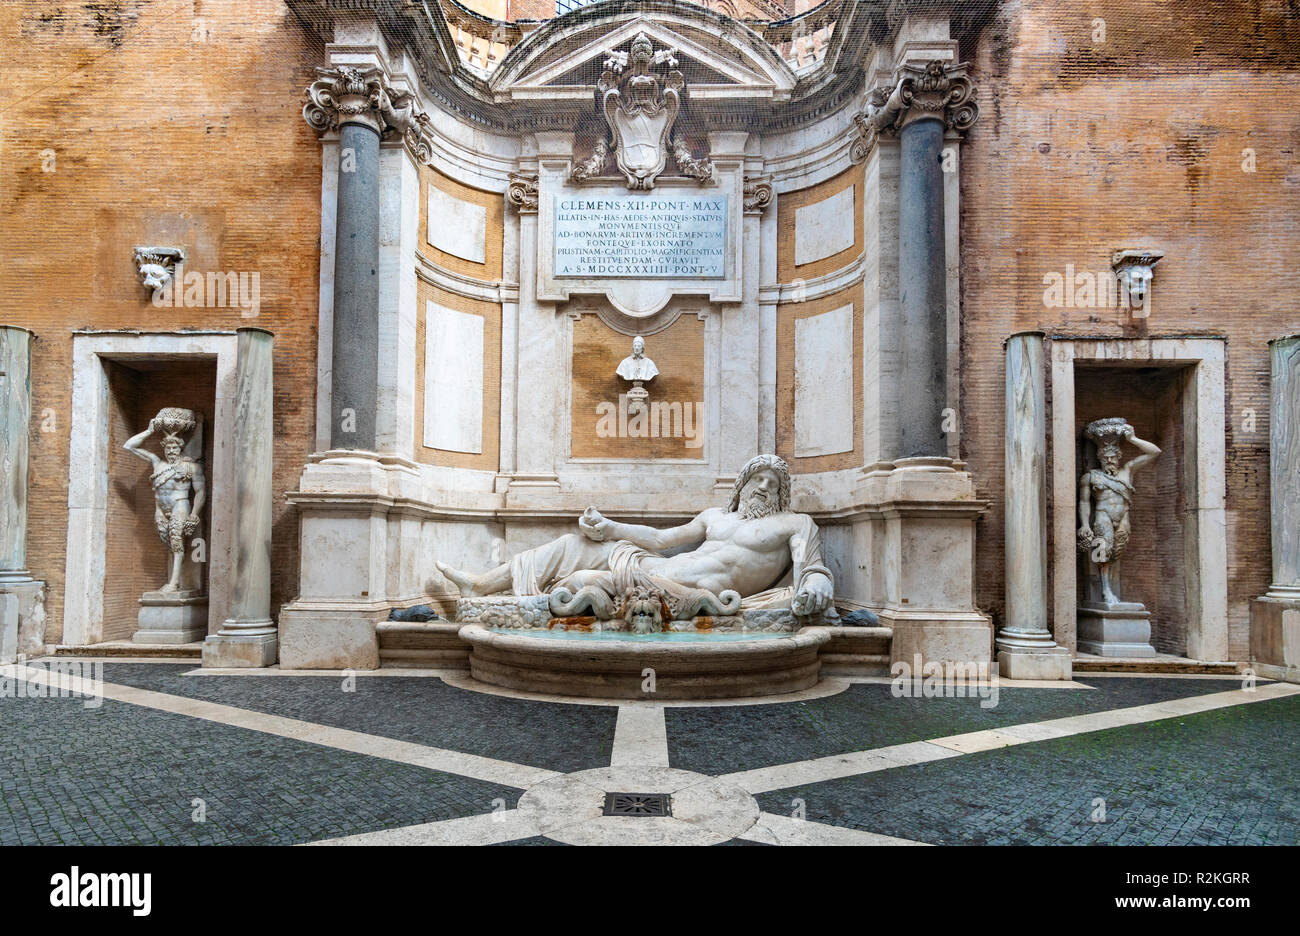 Marphurius Marforio (1er siècle) est une sculpture en marbre romain d'une rivière ou dieu Oceanus situé dans une fontaine baroque, dans la cour du Palazzo dei Banque D'Images